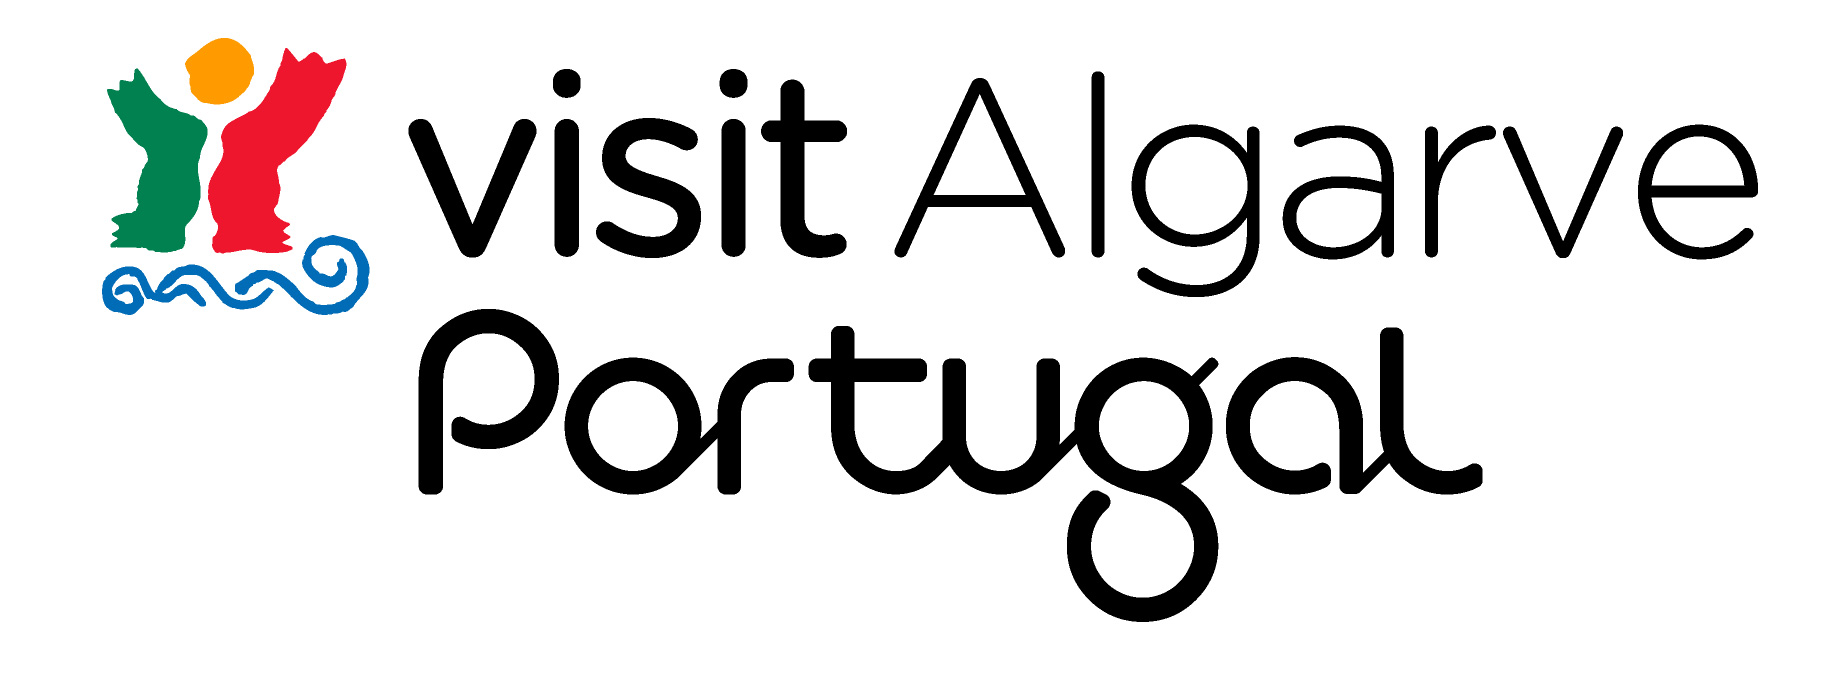 Visit the Algarve